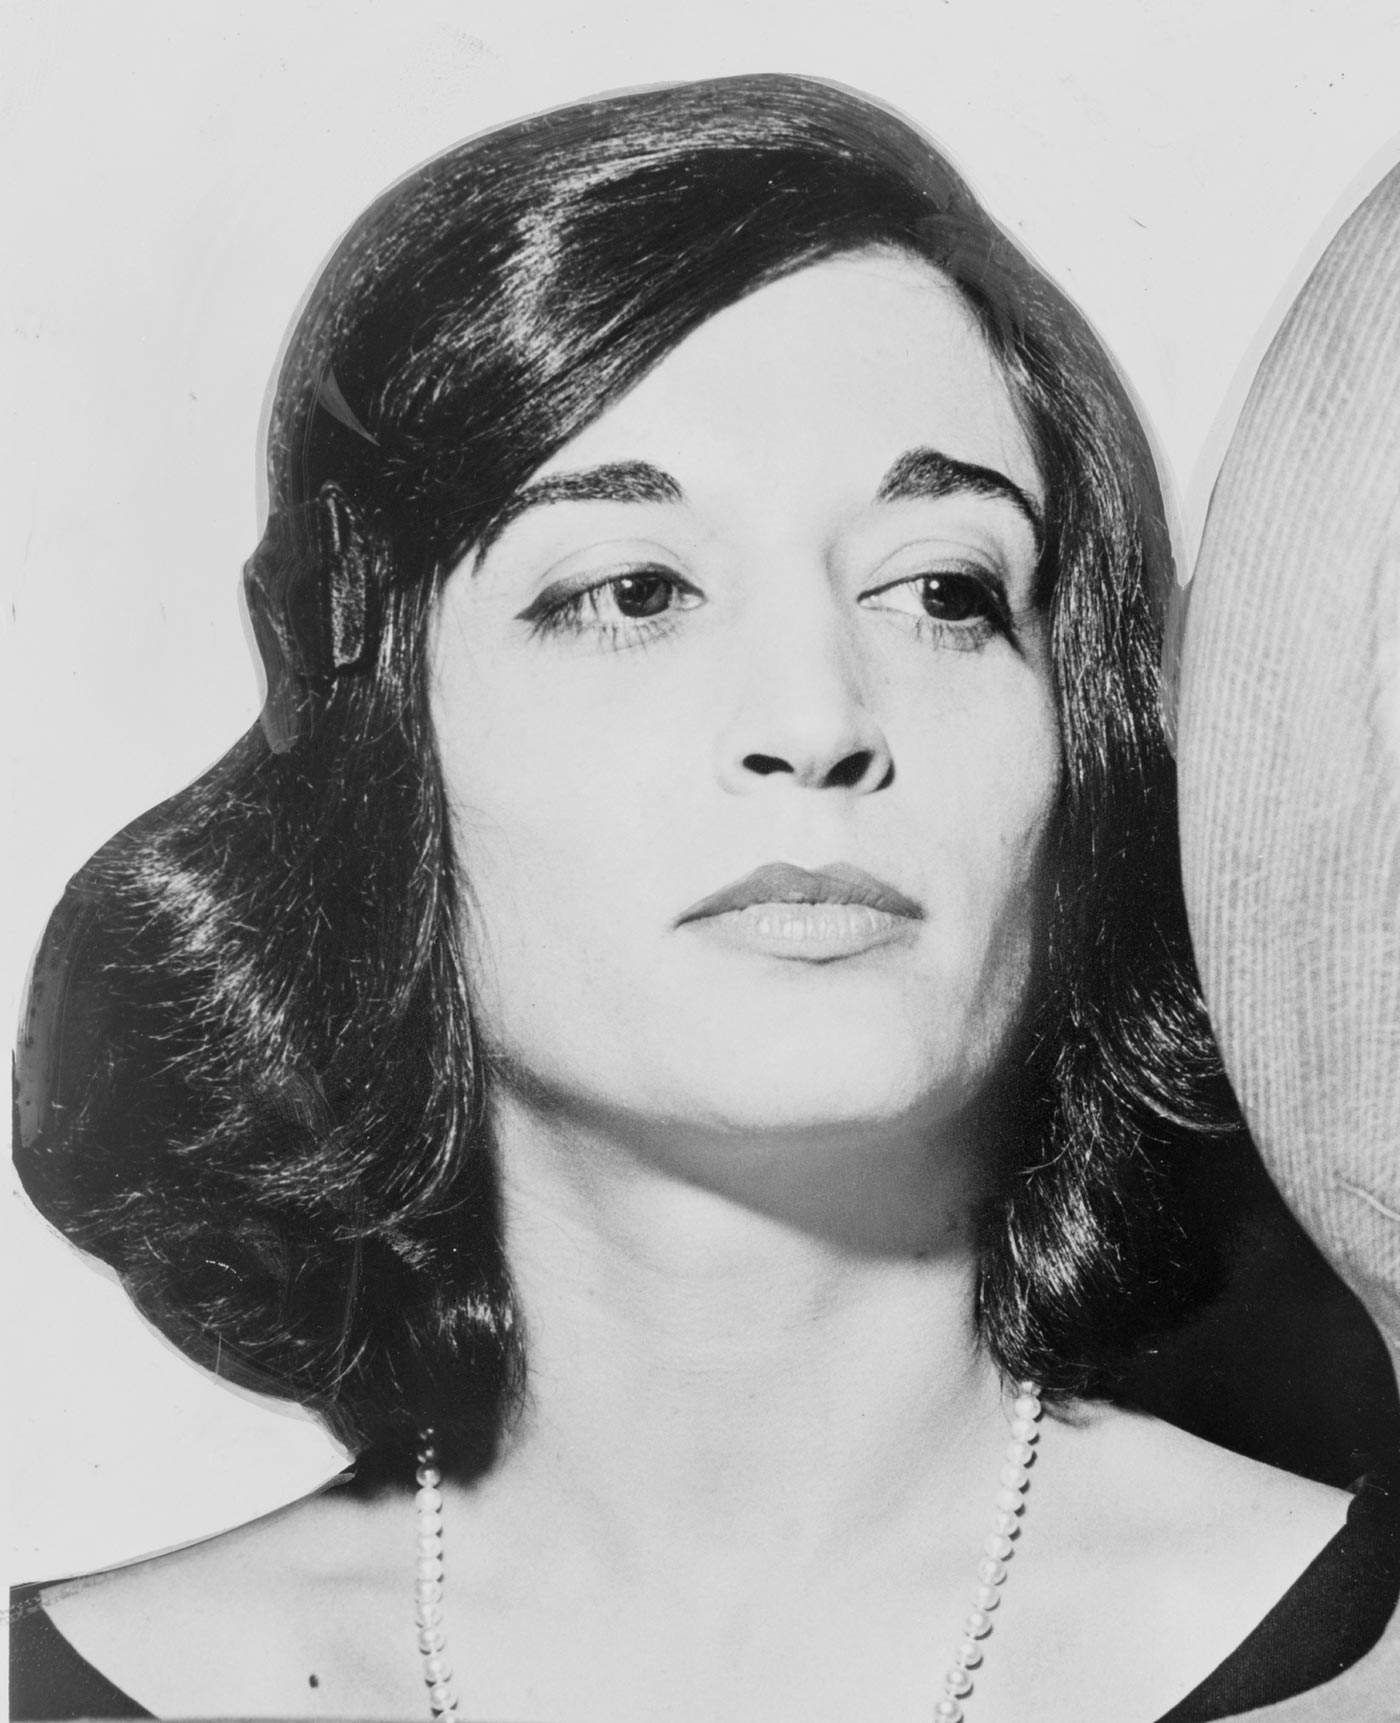 Marisol Escobar